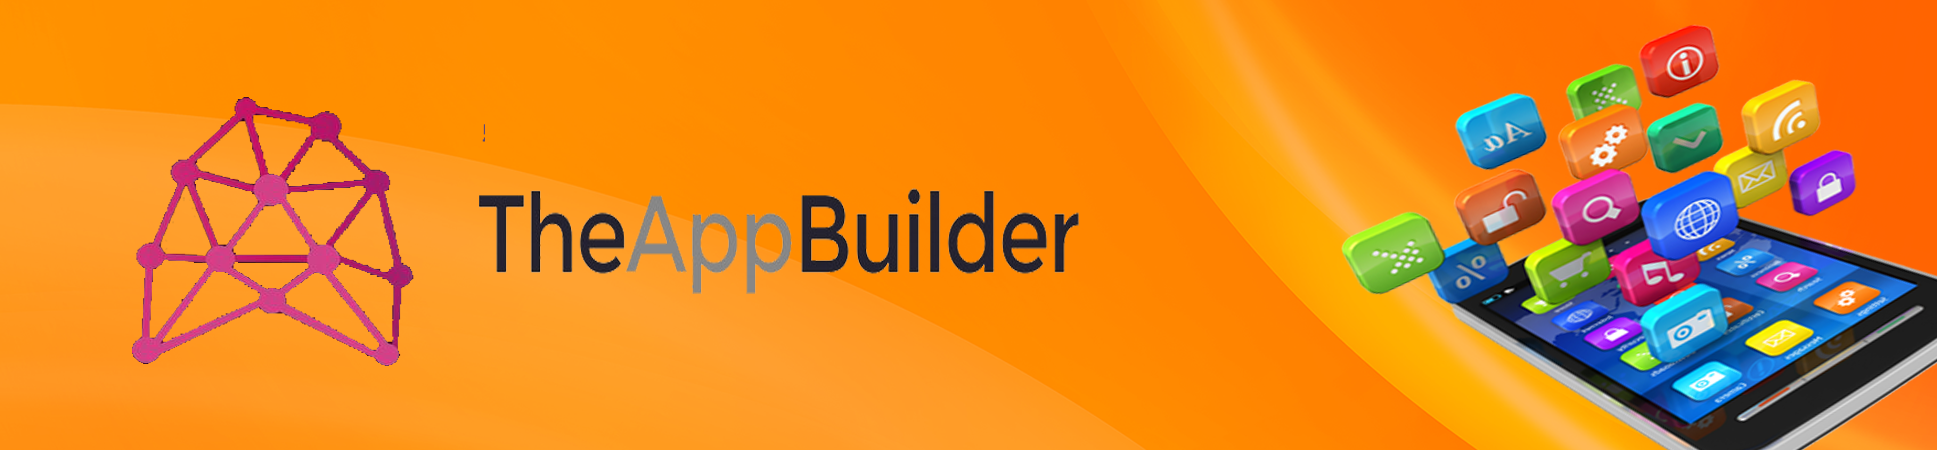 theappbuilder-development-services